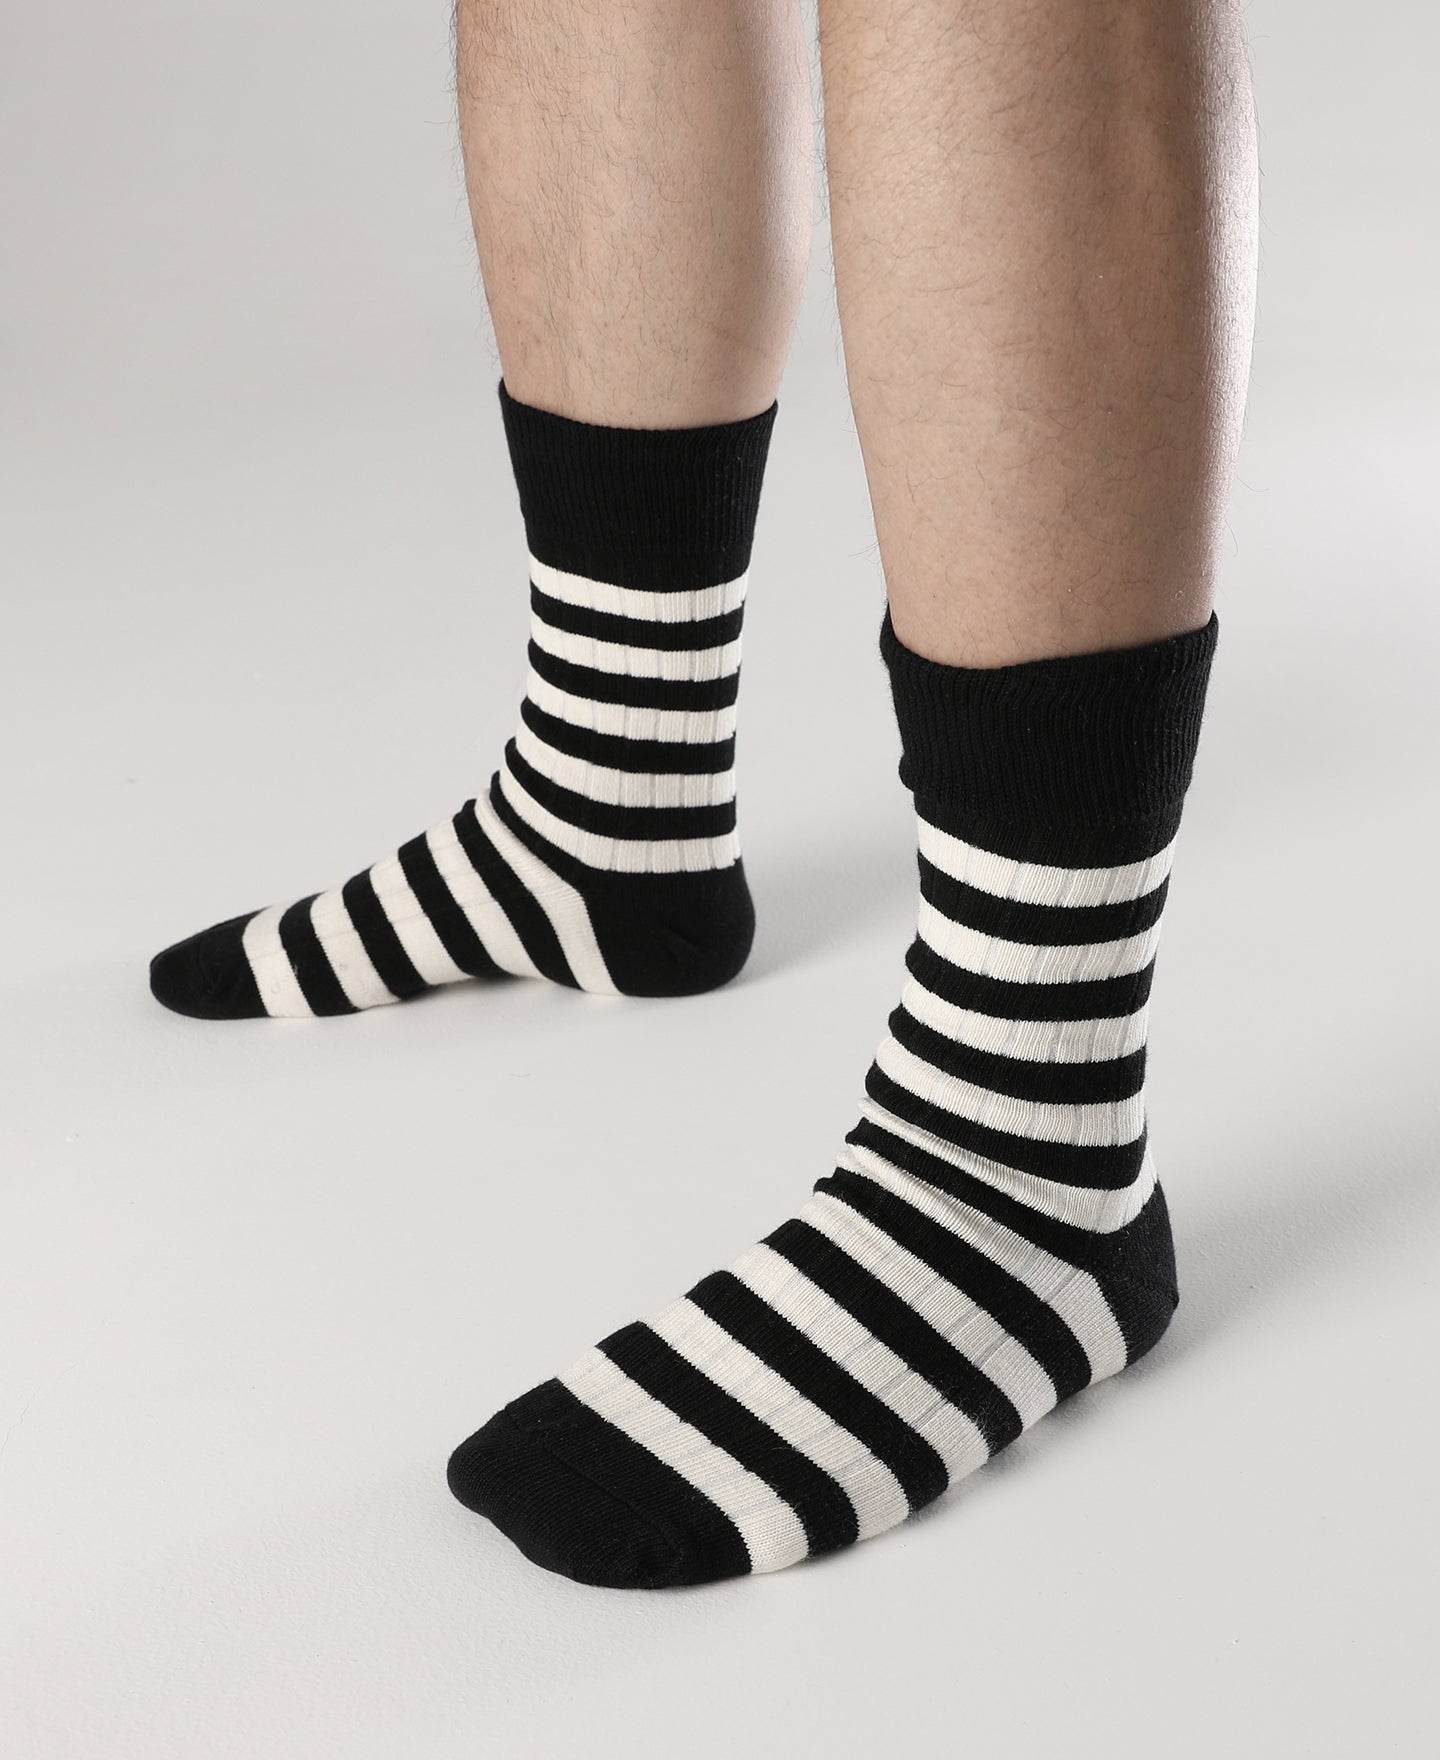 Black & White Striped T.U.K. Men's Crew Socks